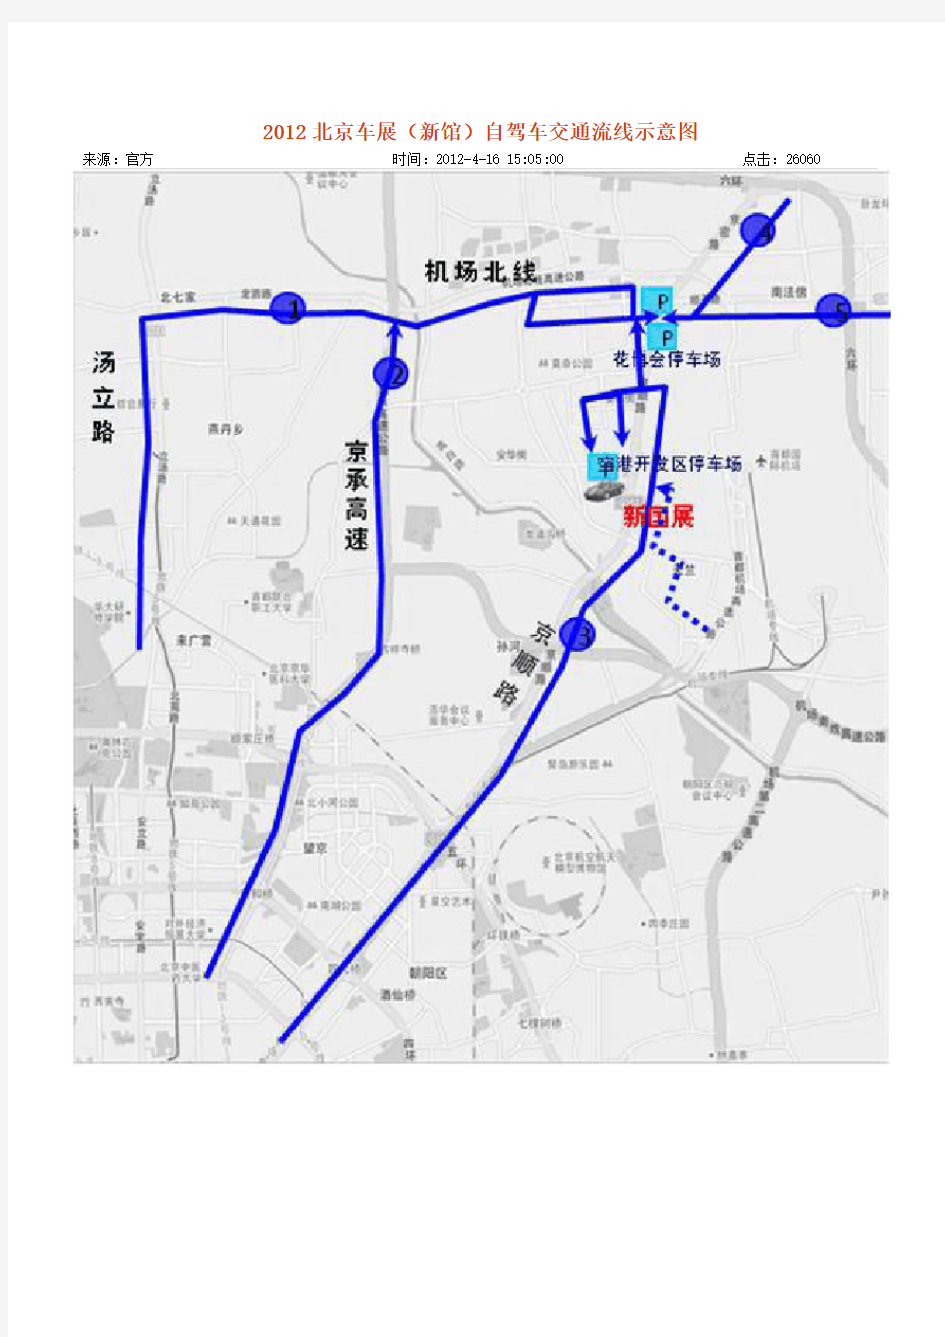 中国国际展览中心(新馆)交通指南